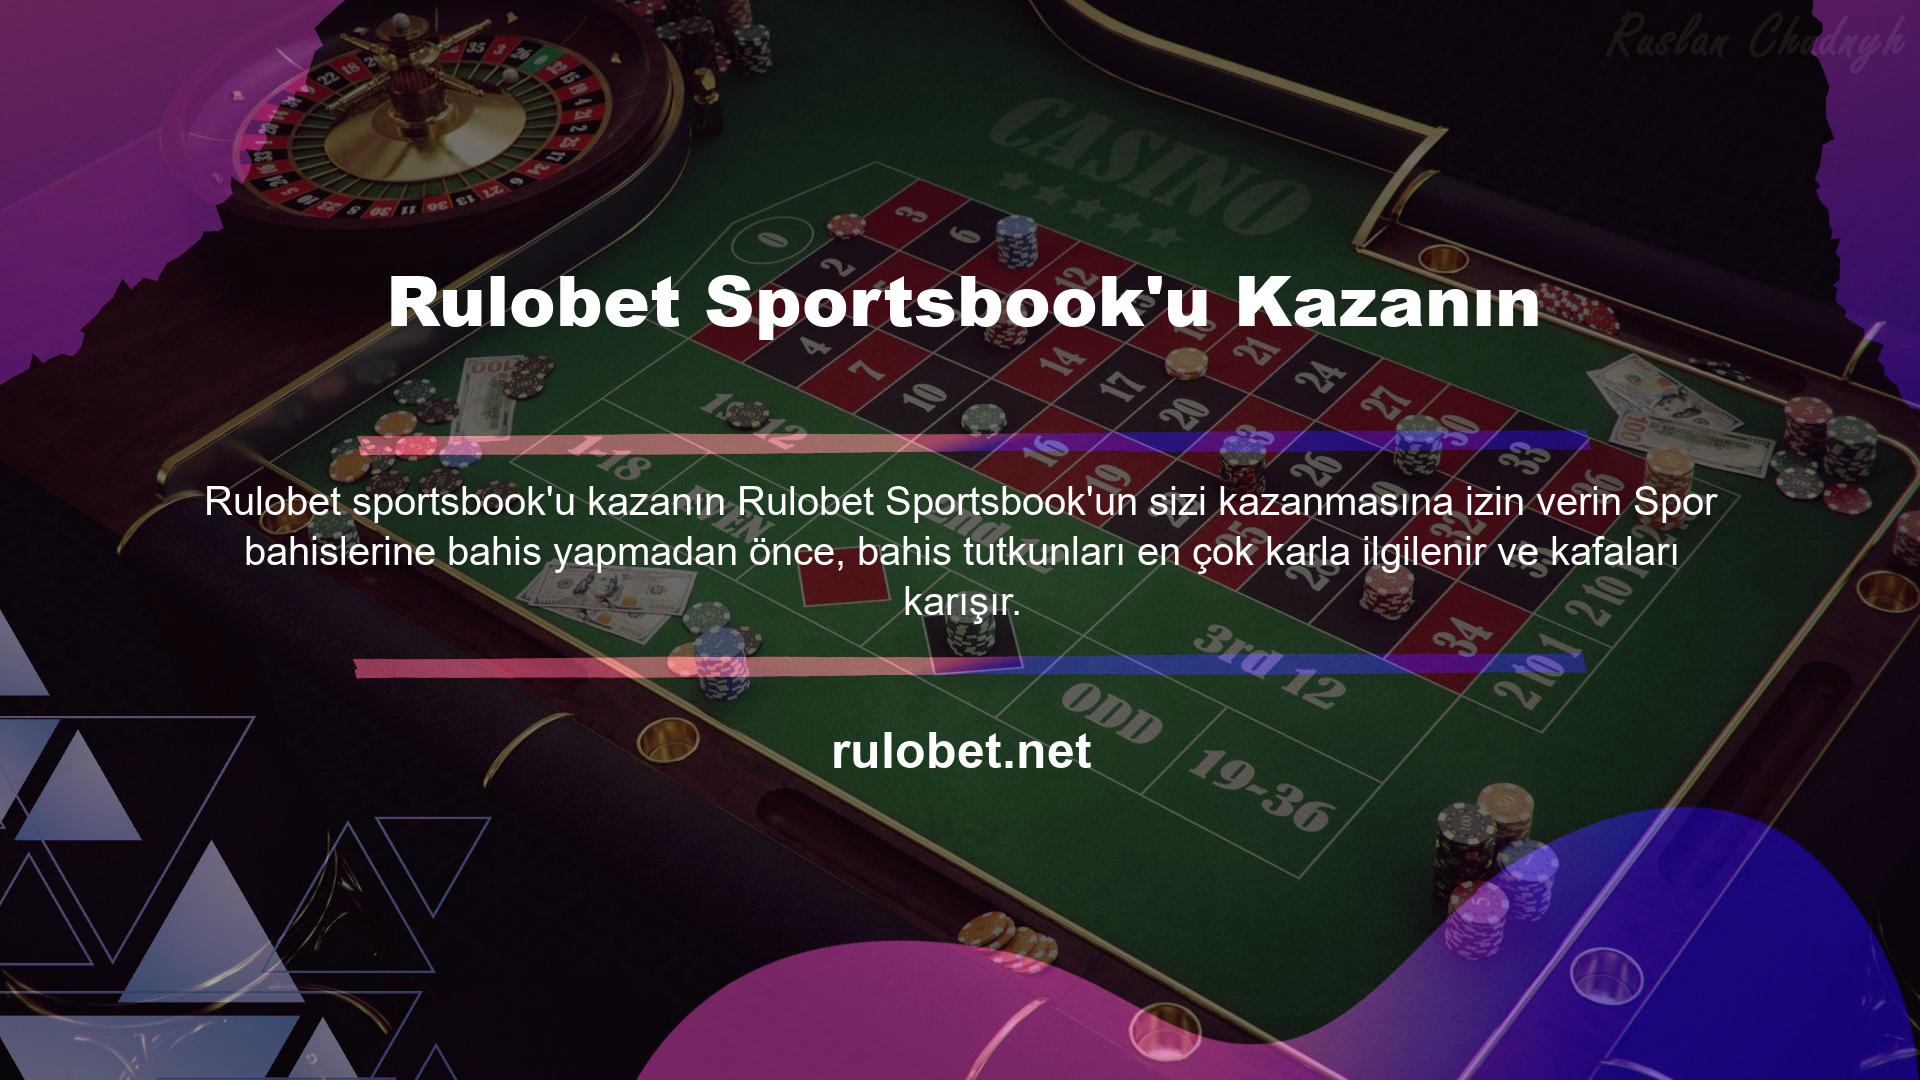 Rulobet, spor bahisleri konusuyla ilgili sitelerde her zaman Rulobet sportsbook'u kazanın olumlu yanıt alır